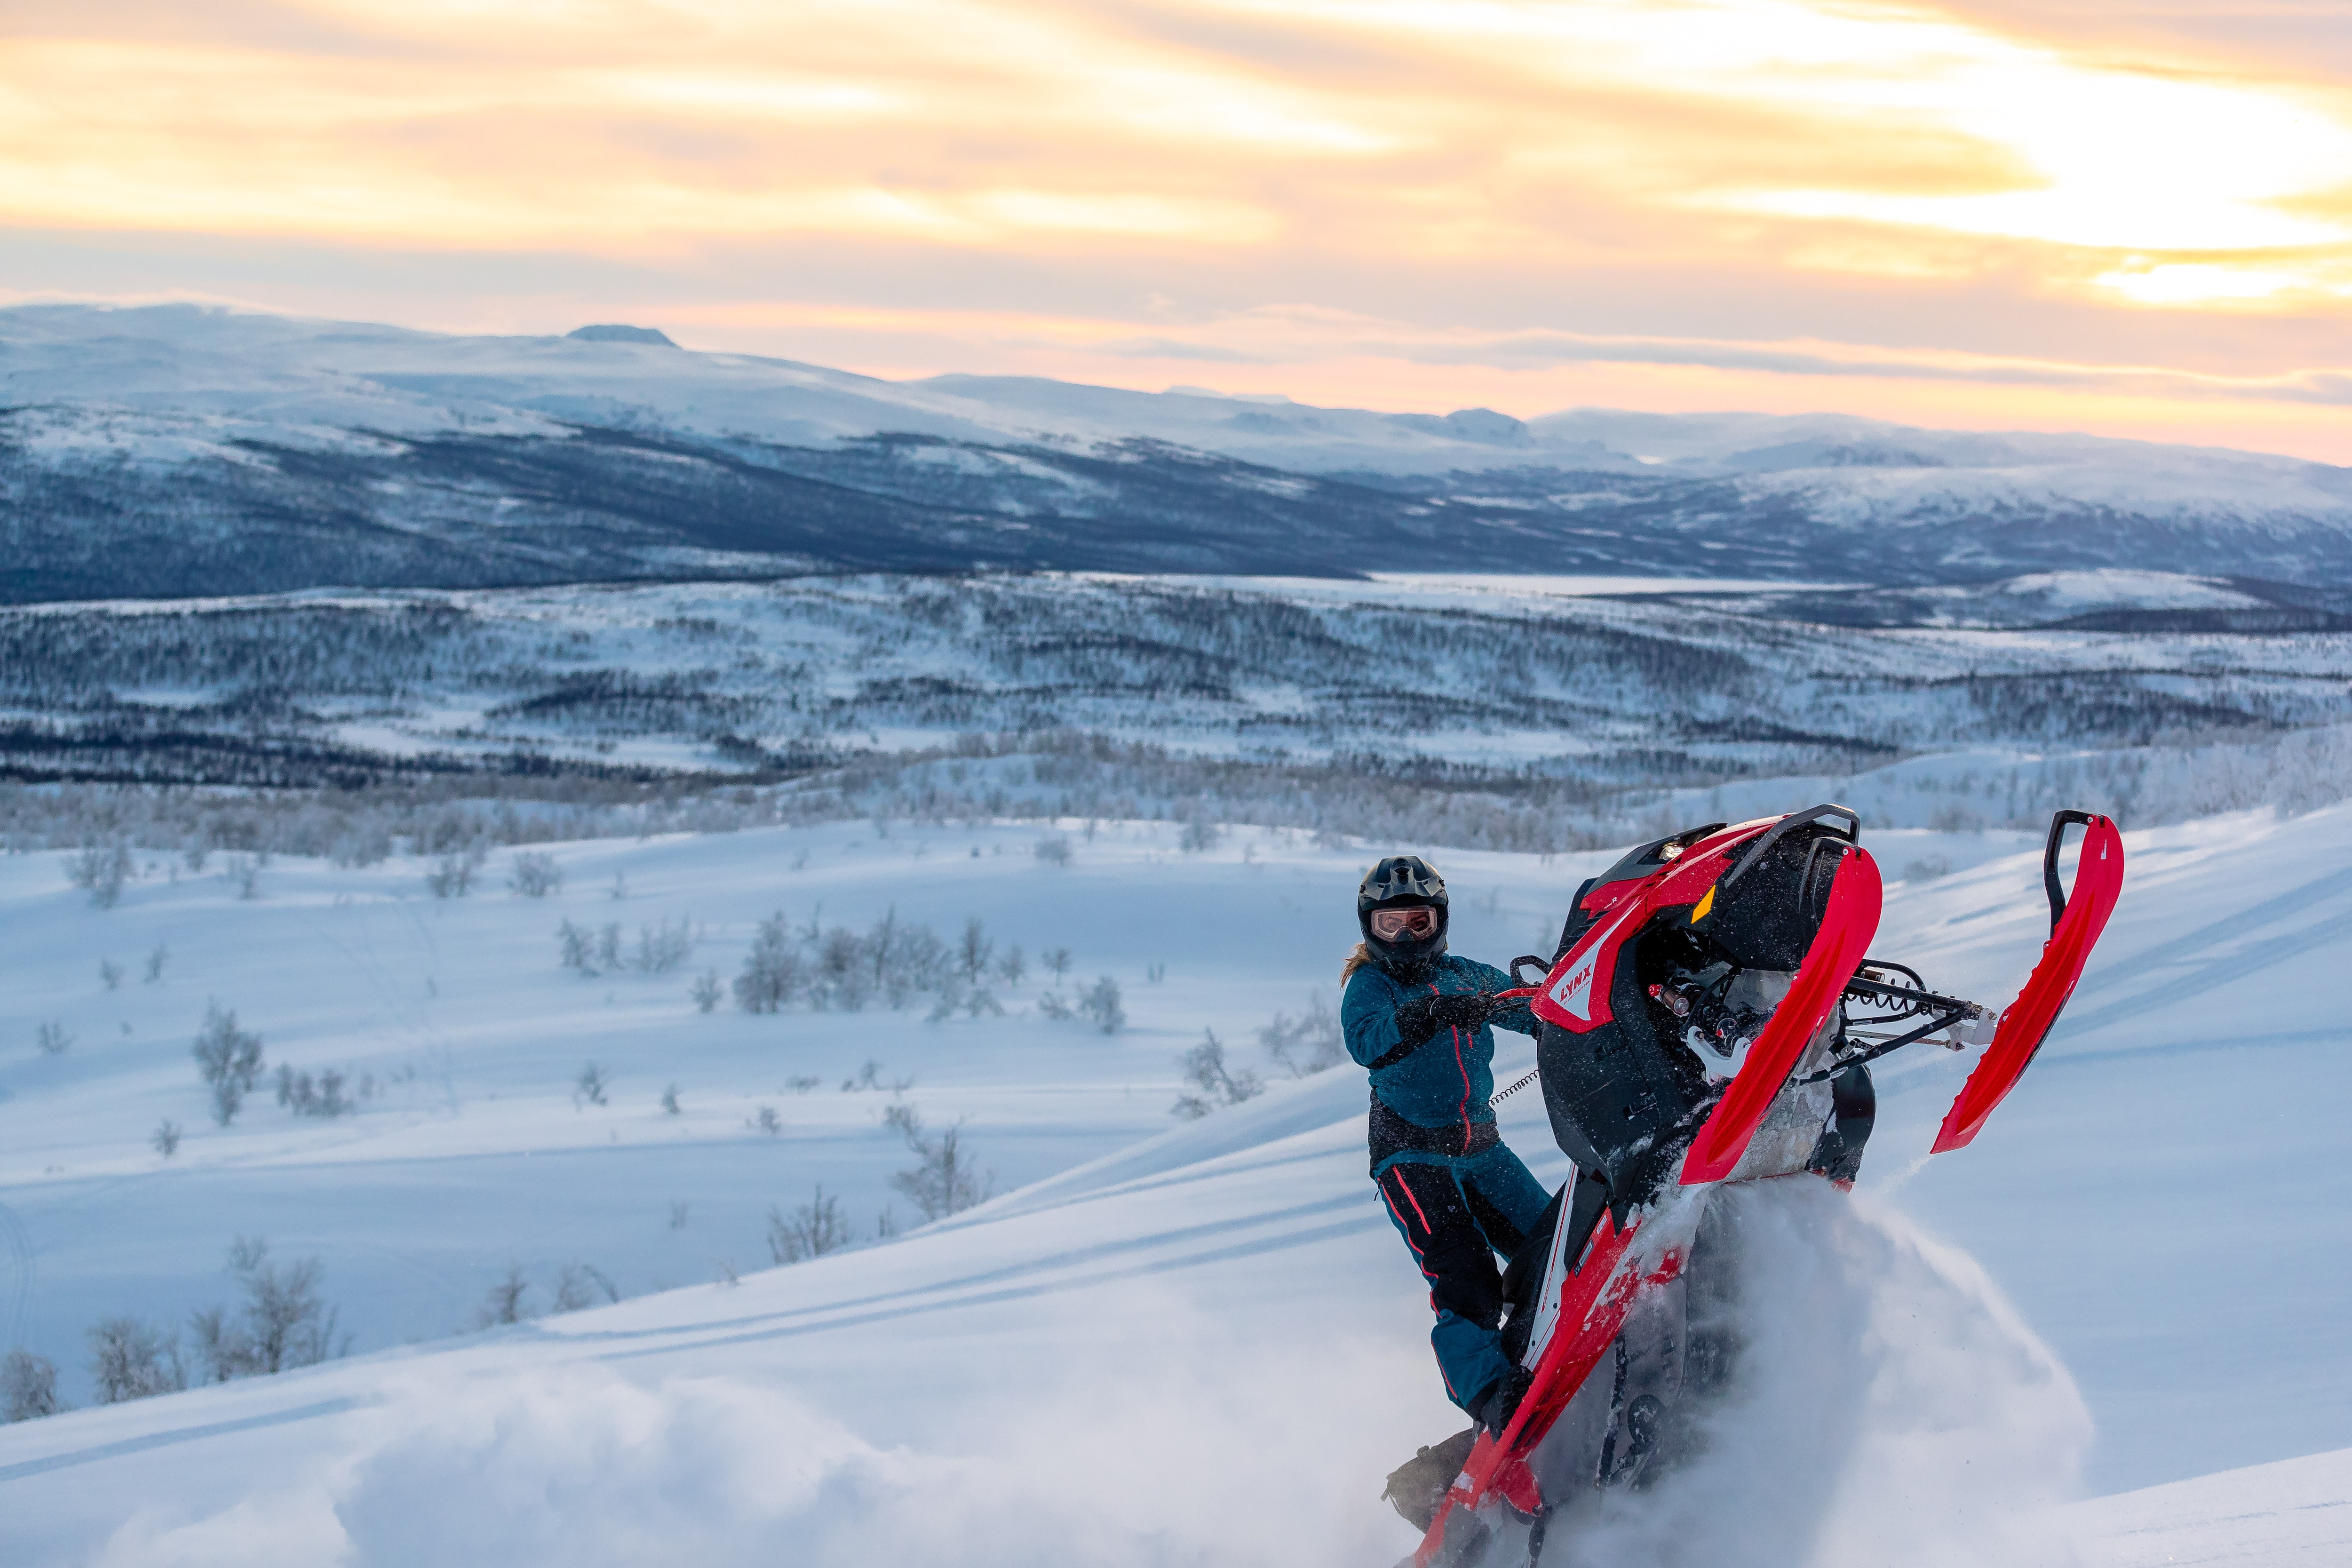 Mariell Kvickström fazendo um salto com uma moto de neve